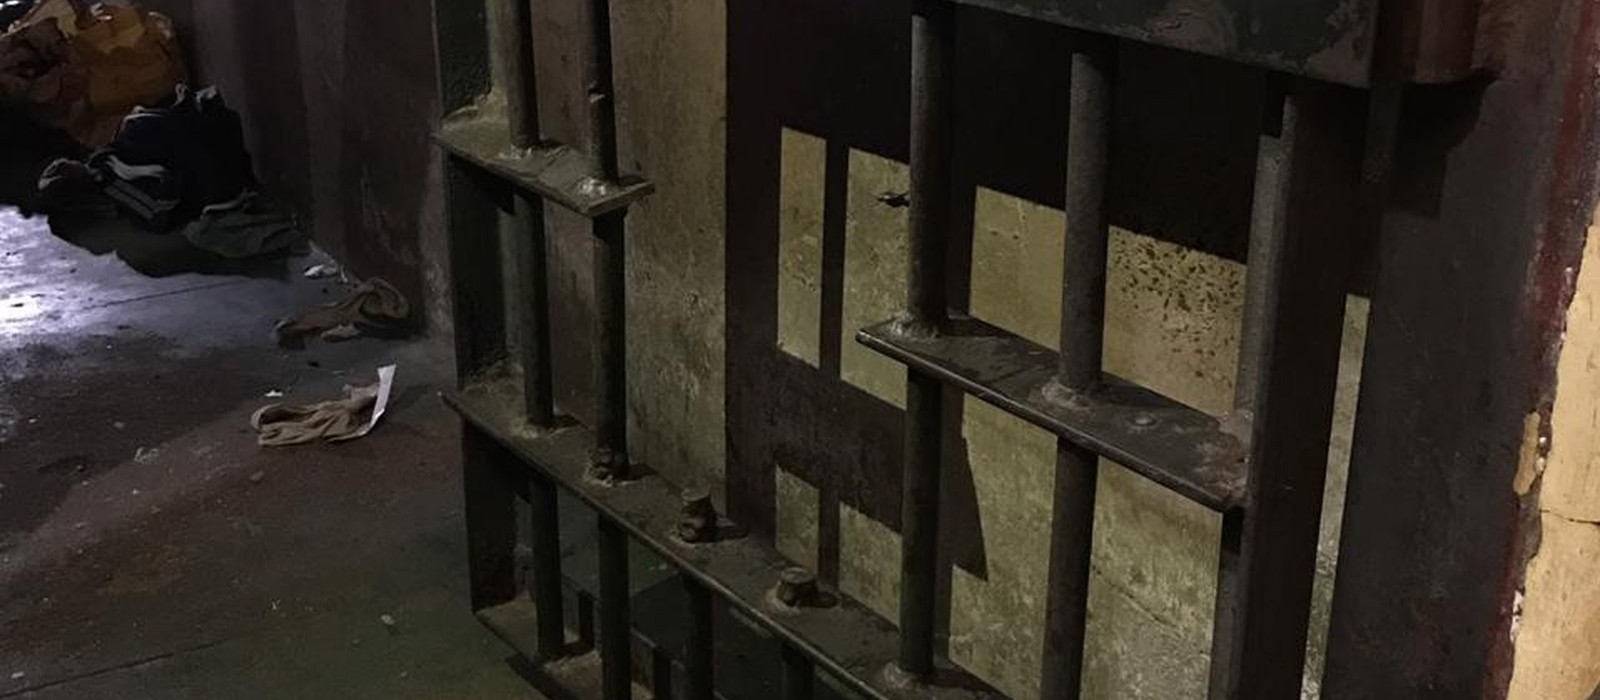  Doze presos ainda estão foragidos da cadeia de Alto Paraná